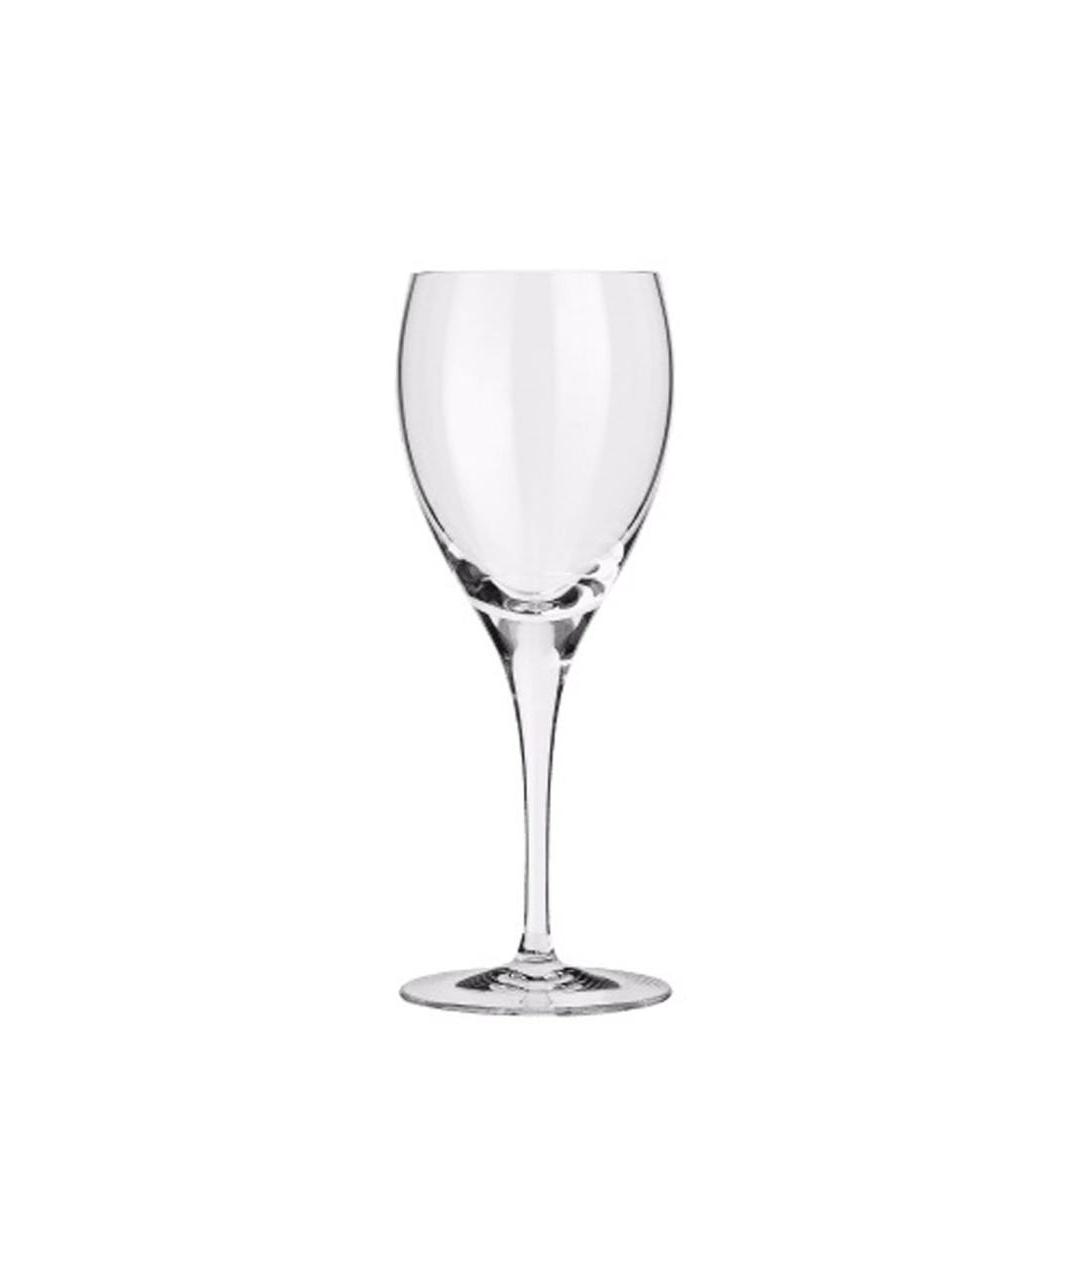 CHRISTOFLE Стеклянный бокал для вина, фото 1